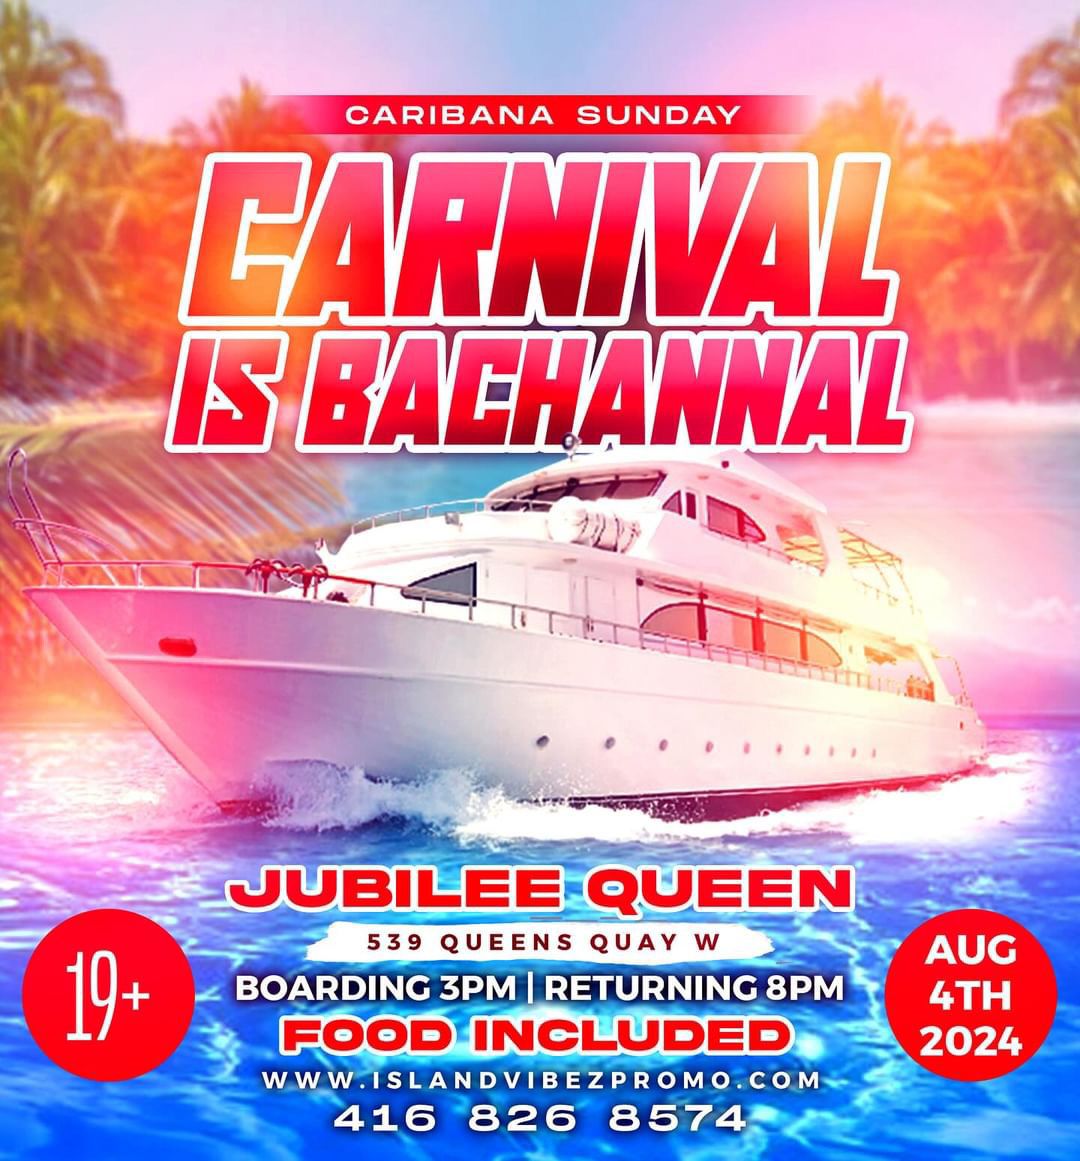 Caribana Sunday Boat Cruise - Aug4th 